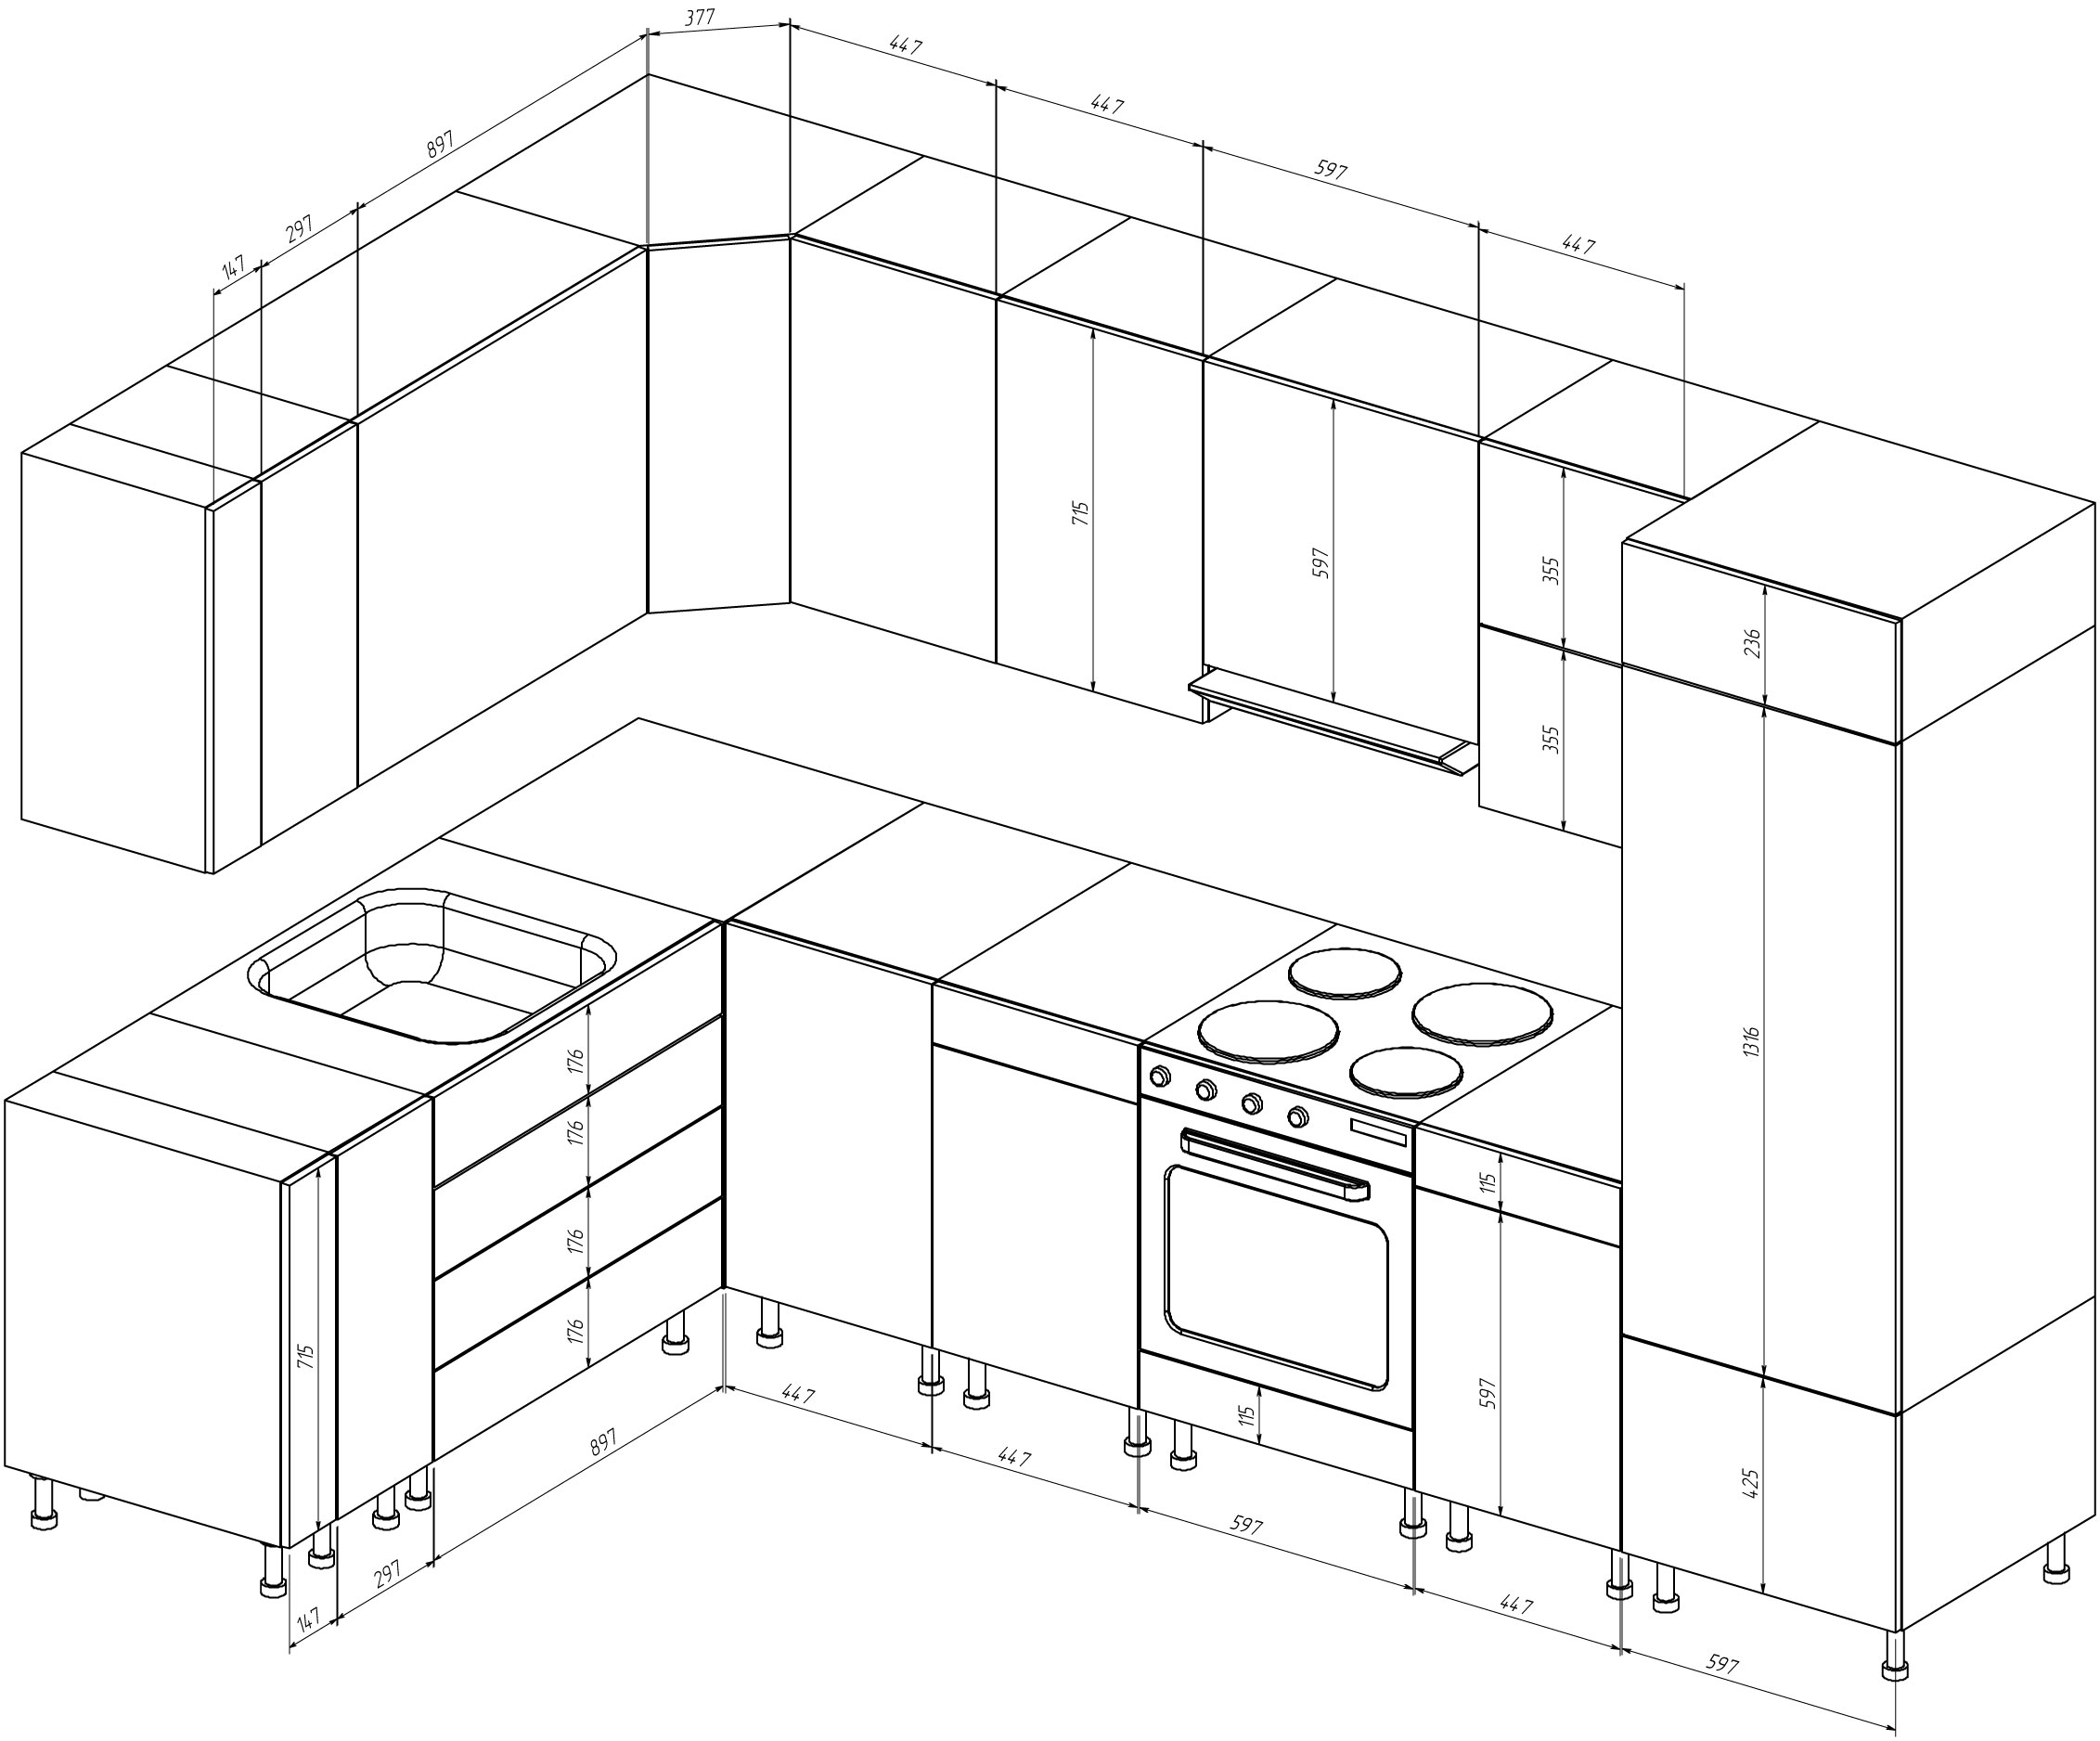 Стандартные размеры кухни чертежи кухонной мебели